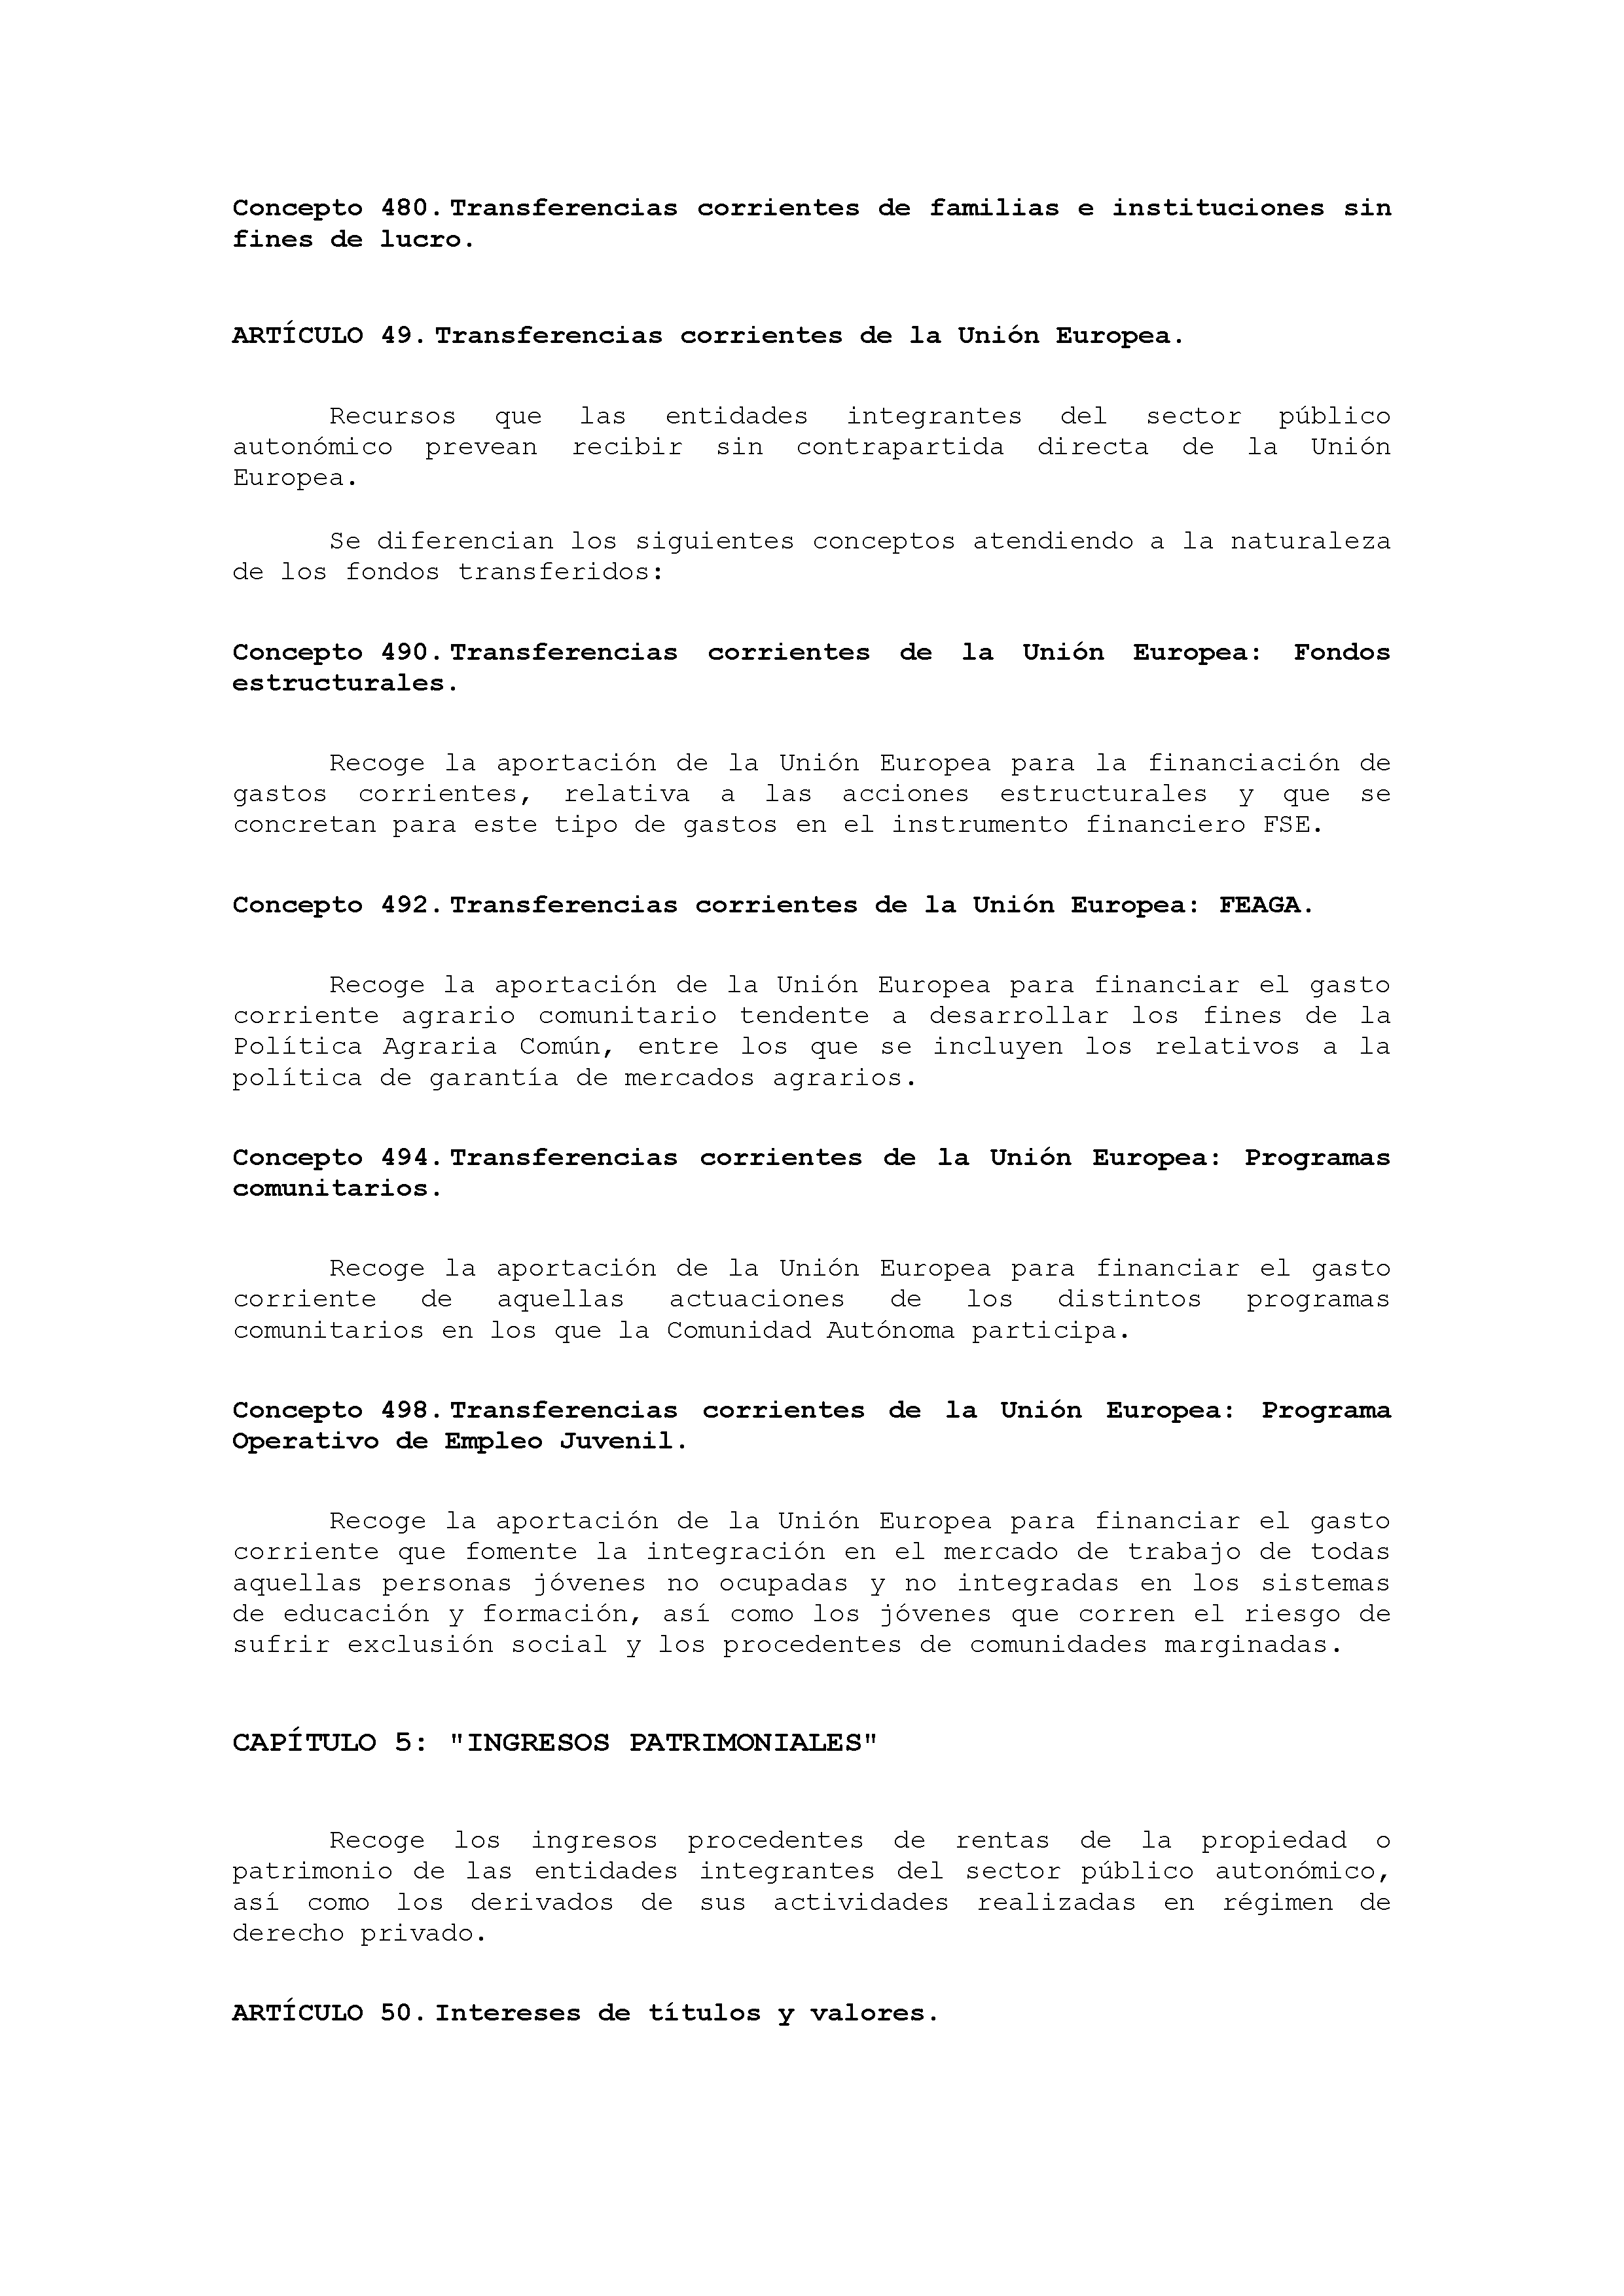 ANEXO VIII CÓDIGO DE LA CLASIFICACIÓN ECONÓMICA DE LOS INGRESOS PÚBLICOS Pag 14